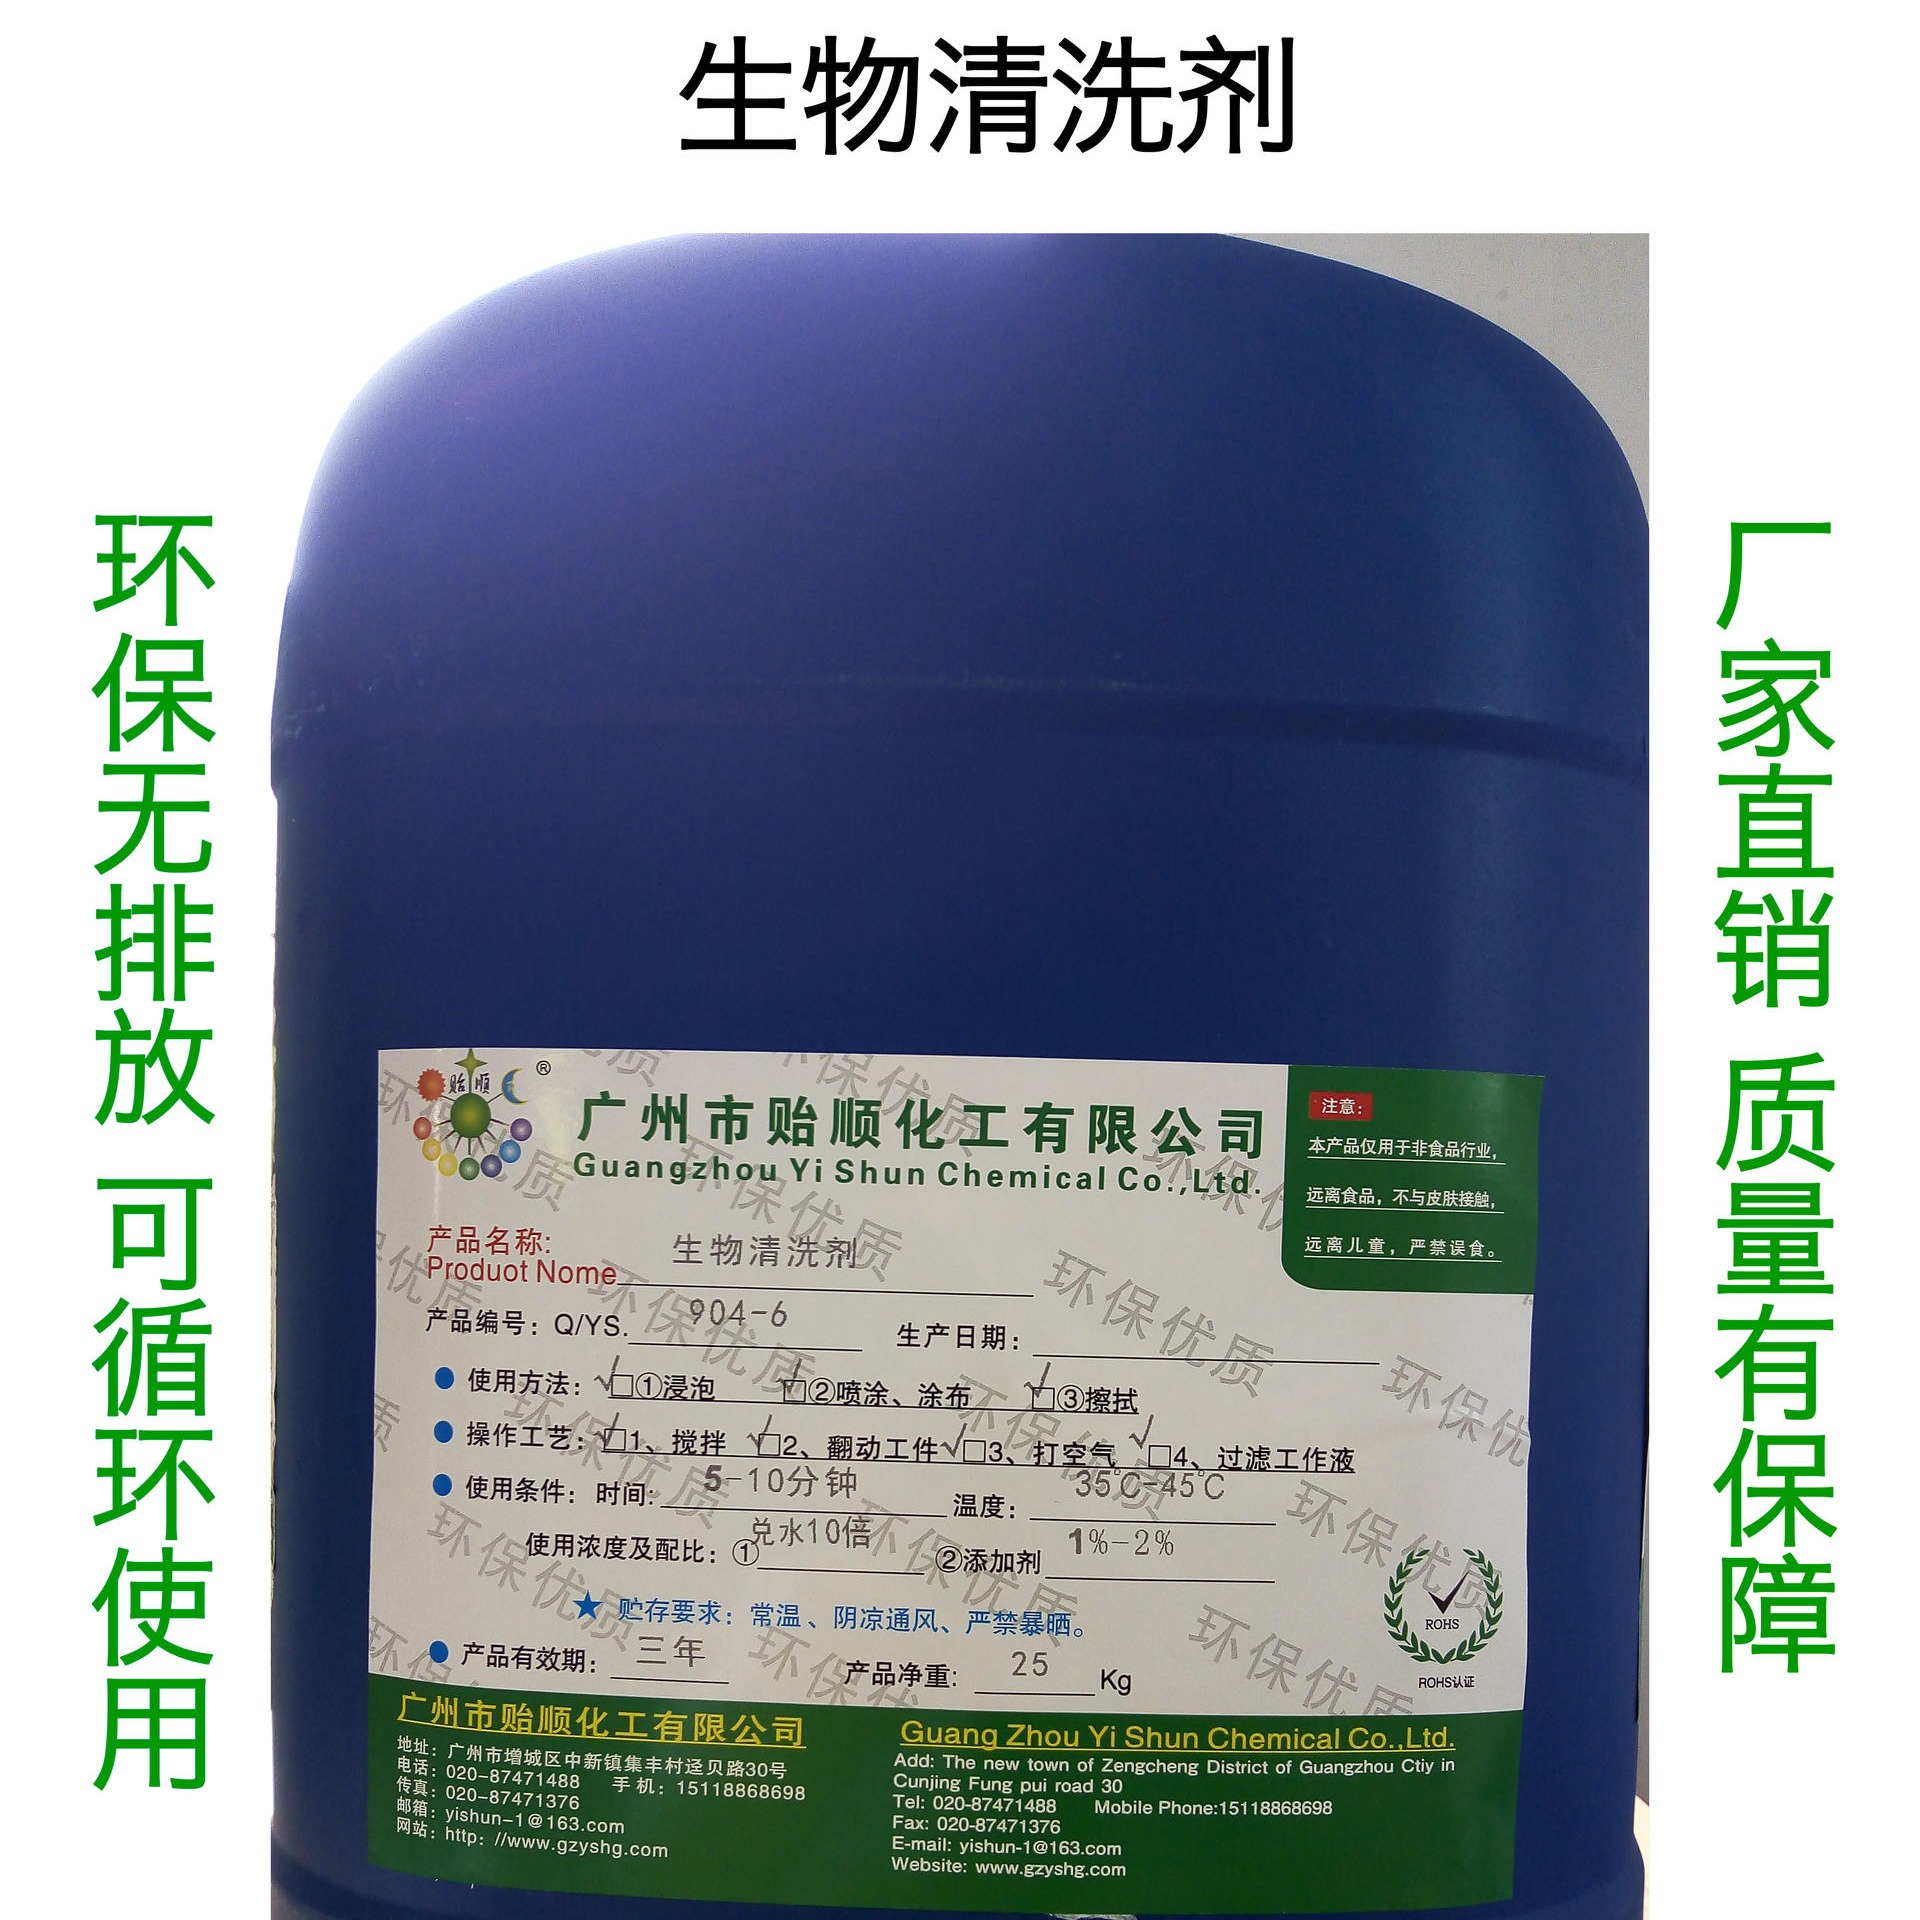 贻顺牌Q/YS.904-6生物清洗剂 高效环保型的生物清洗剂 可循环使用的生物清洗液 环保无排放的生物清洗剂